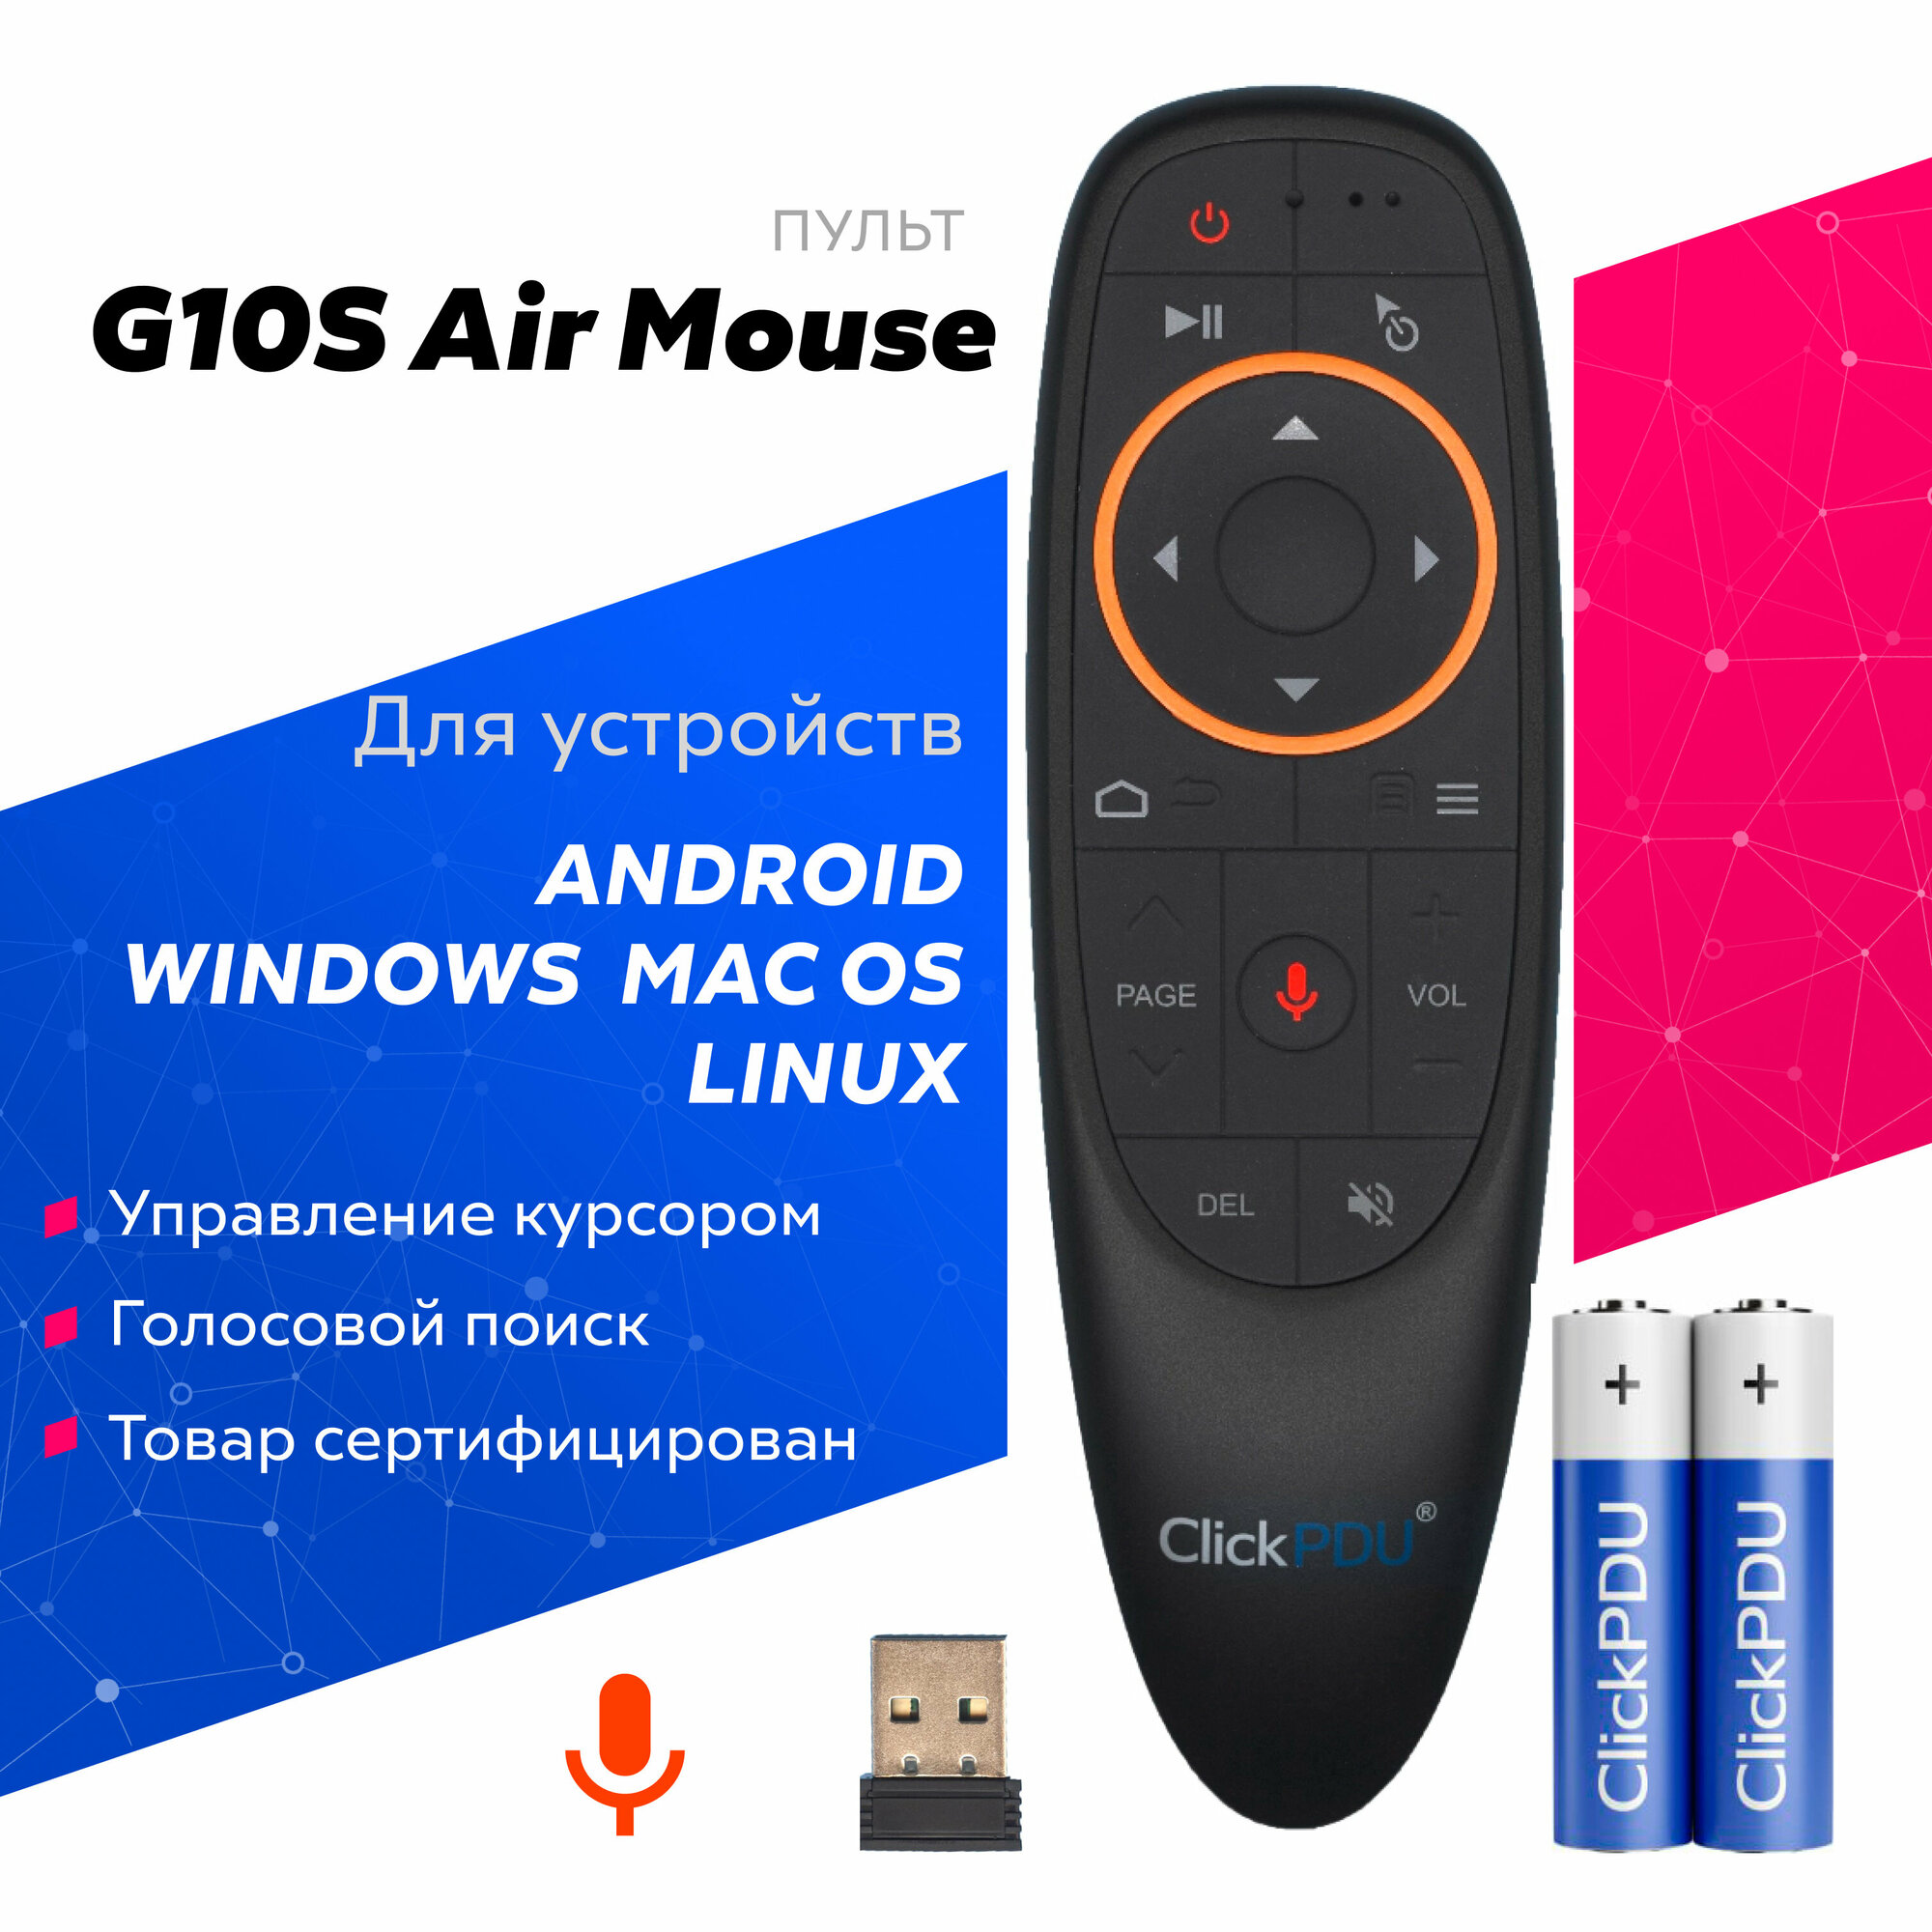 Аэромышь c голосовым управлением с батарейками в комплекте G10S Air Mouse